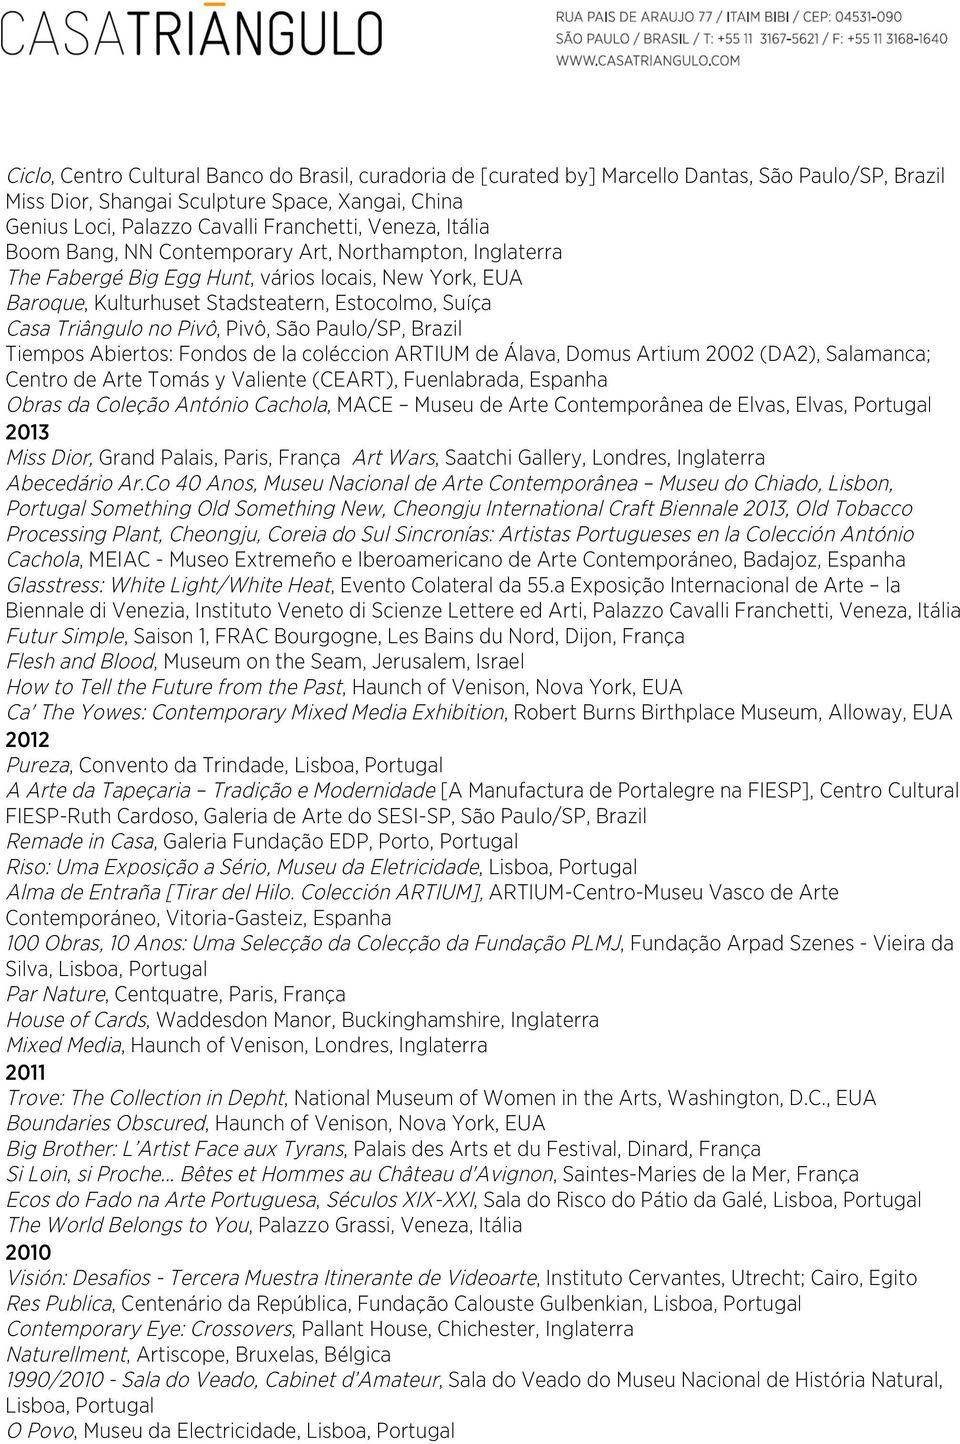 Pivô, Pivô, São Paulo/SP, Brazil Tiempos Abiertos: Fondos de la coléccion ARTIUM de Álava, Domus Artium 2002 (DA2), Salamanca; Centro de Arte Tomás y Valiente (CEART), Fuenlabrada, Espanha Obras da